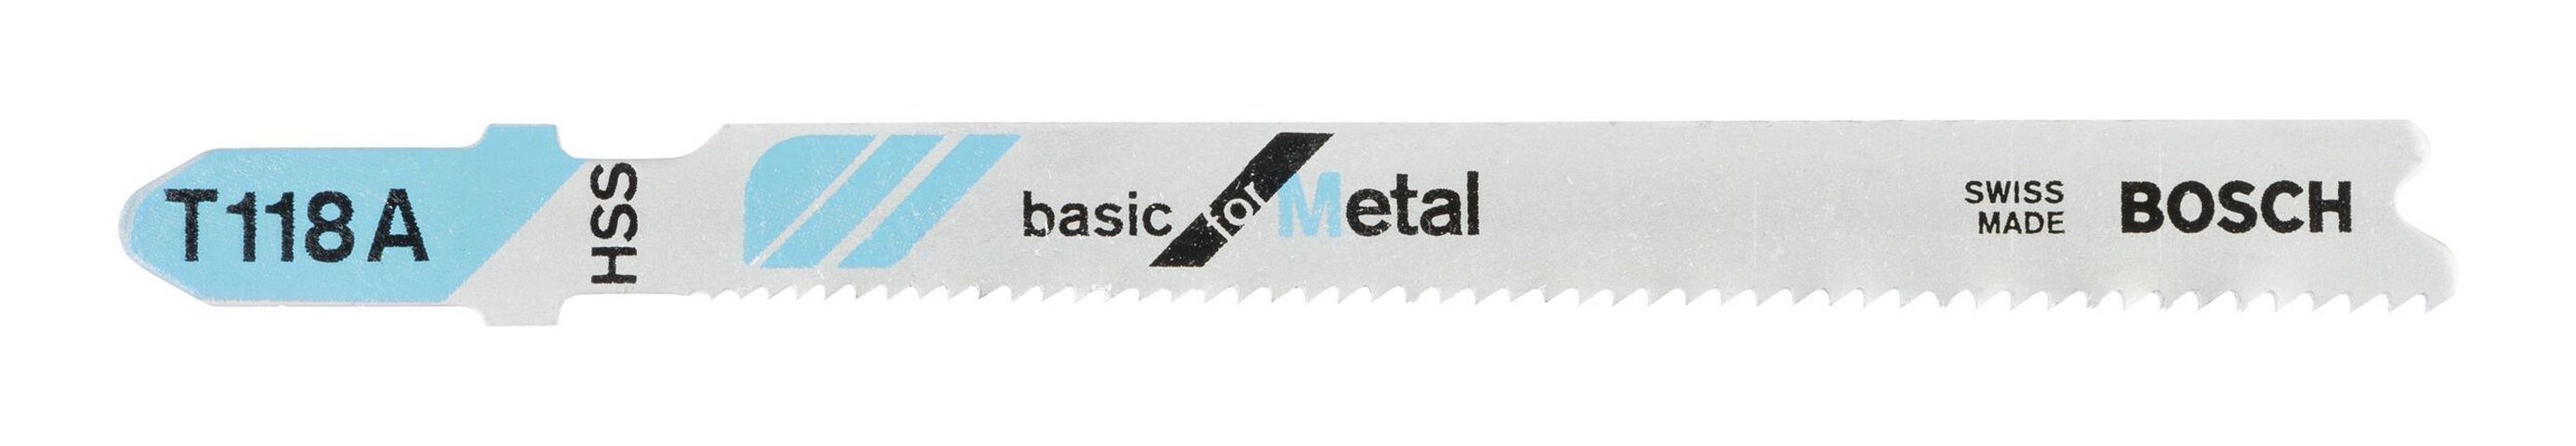 BOSCH Stichsägeblatt (5 Stück), T 118 A Basic for Metal - 5er-Pack